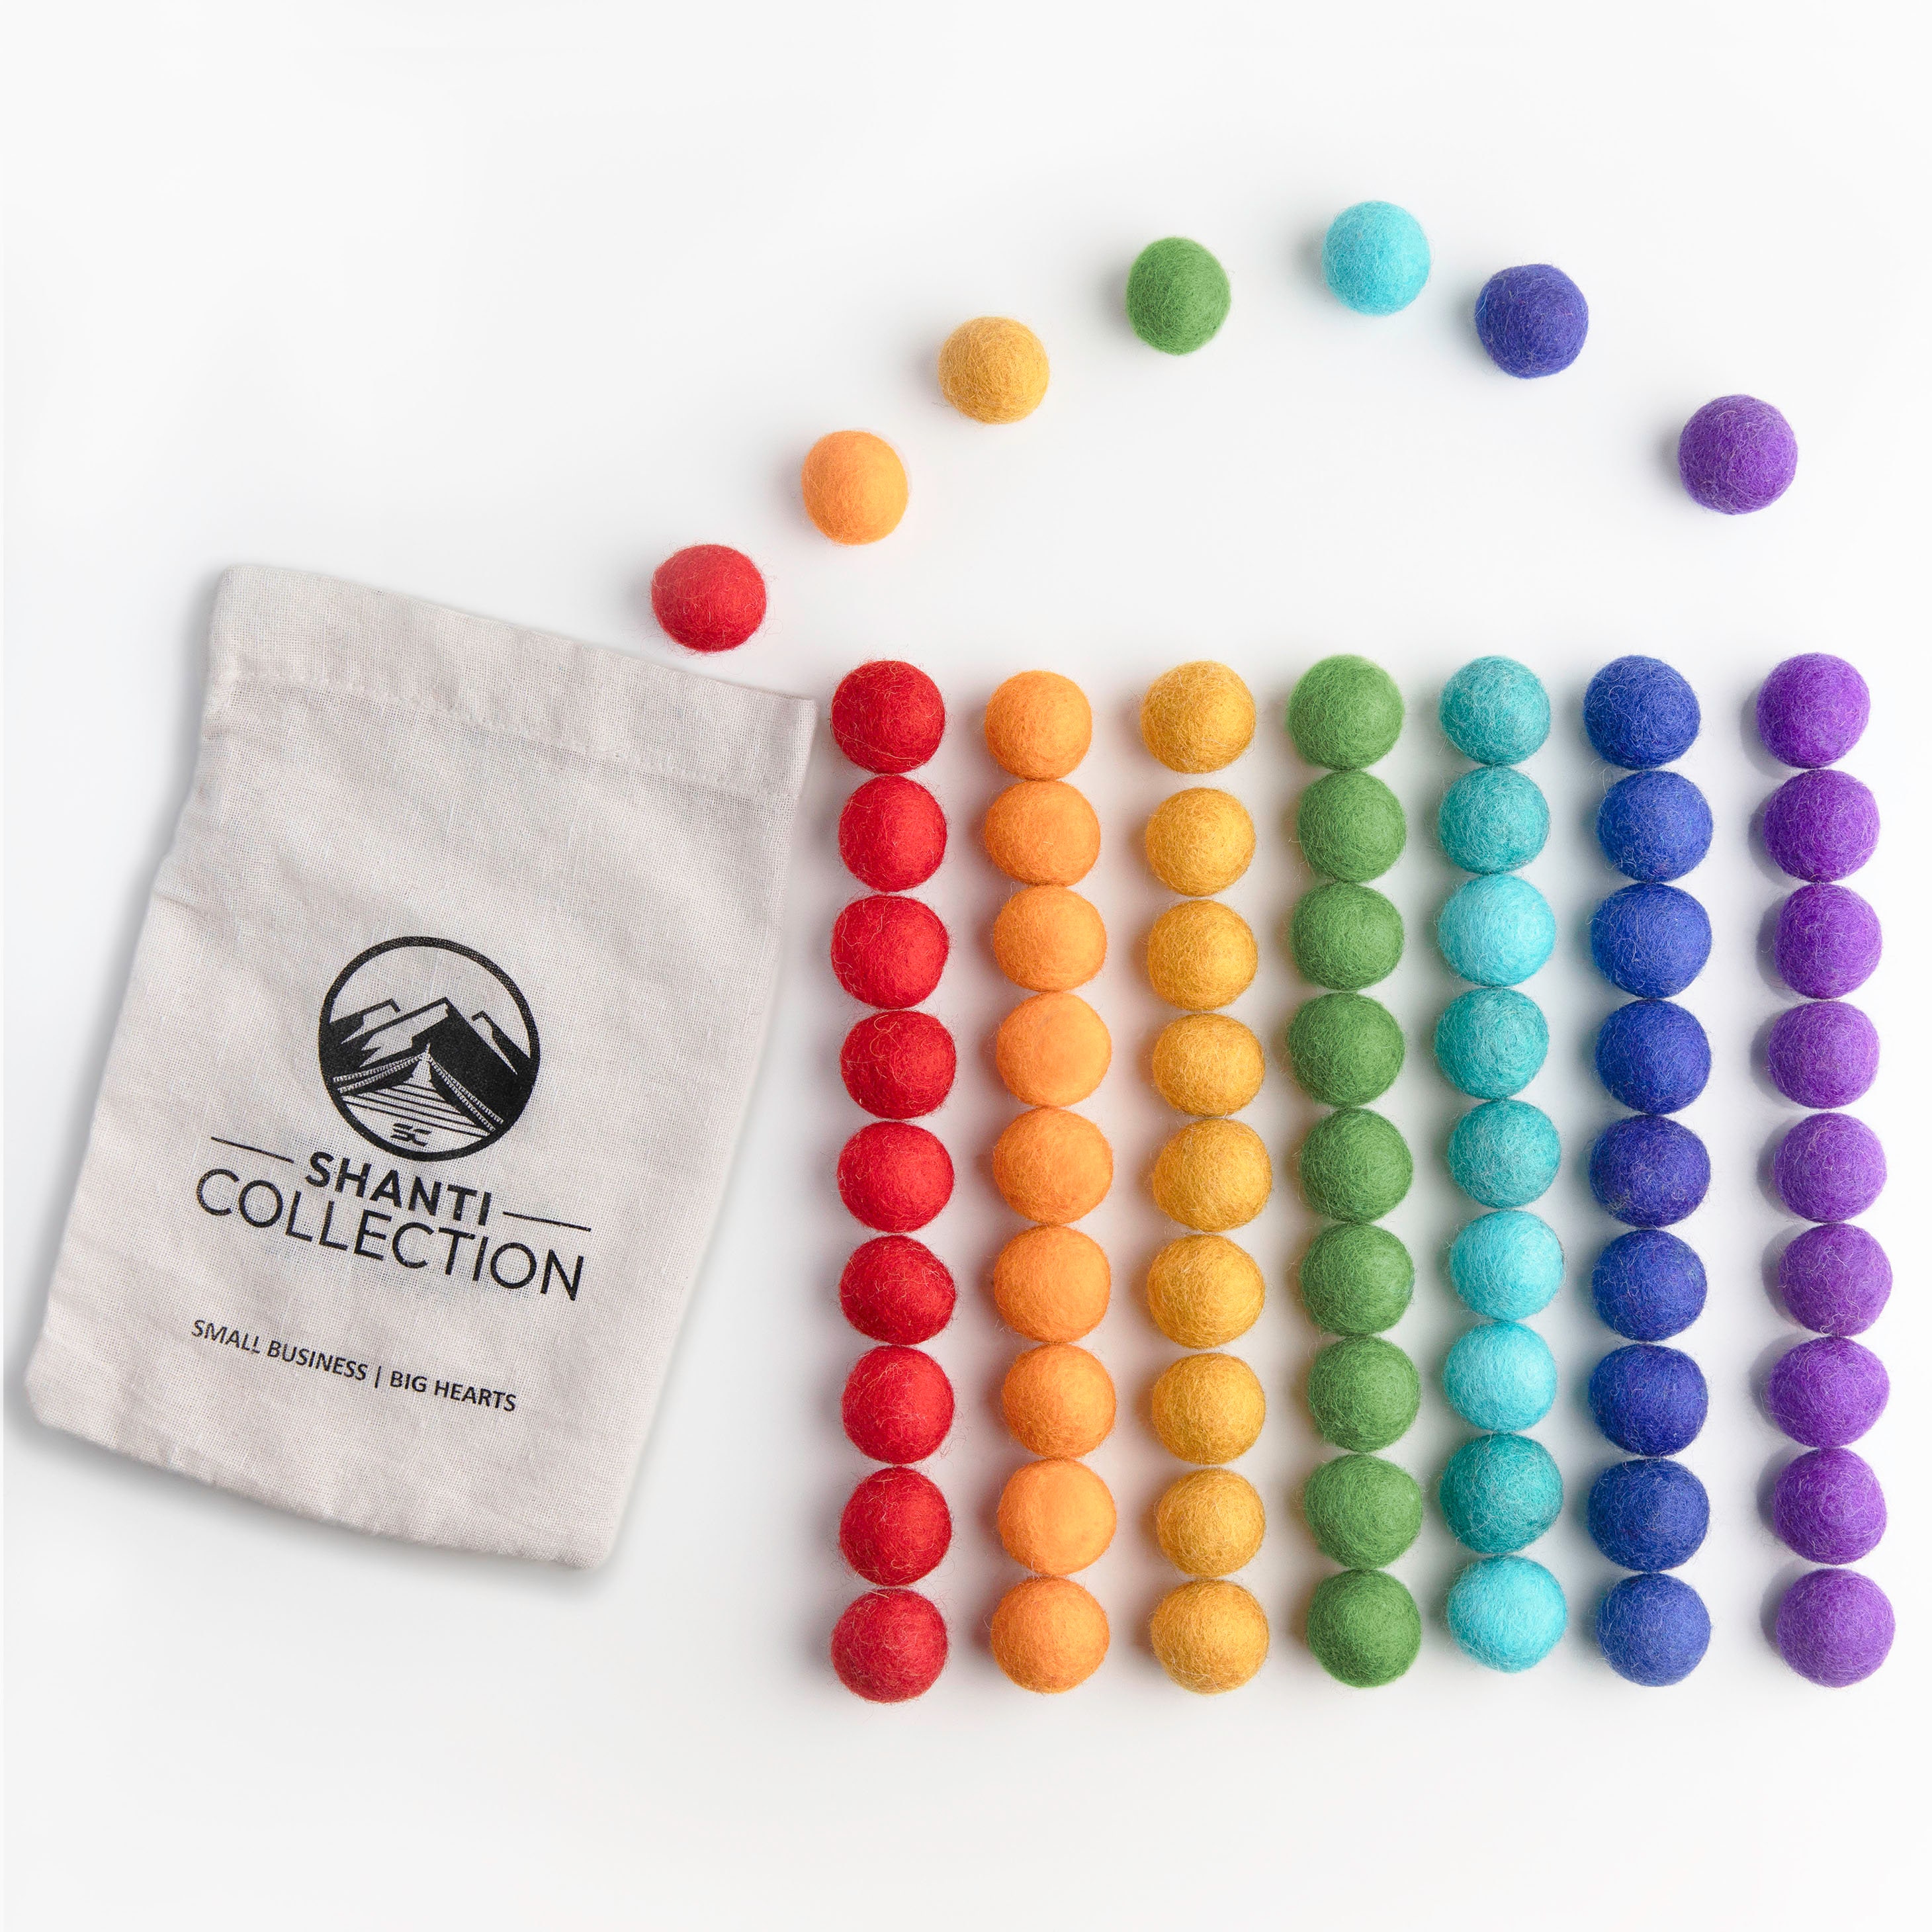 50 Pcs Pom Poms, Colorful Cotton Pom Pom Balls, Assorted Color